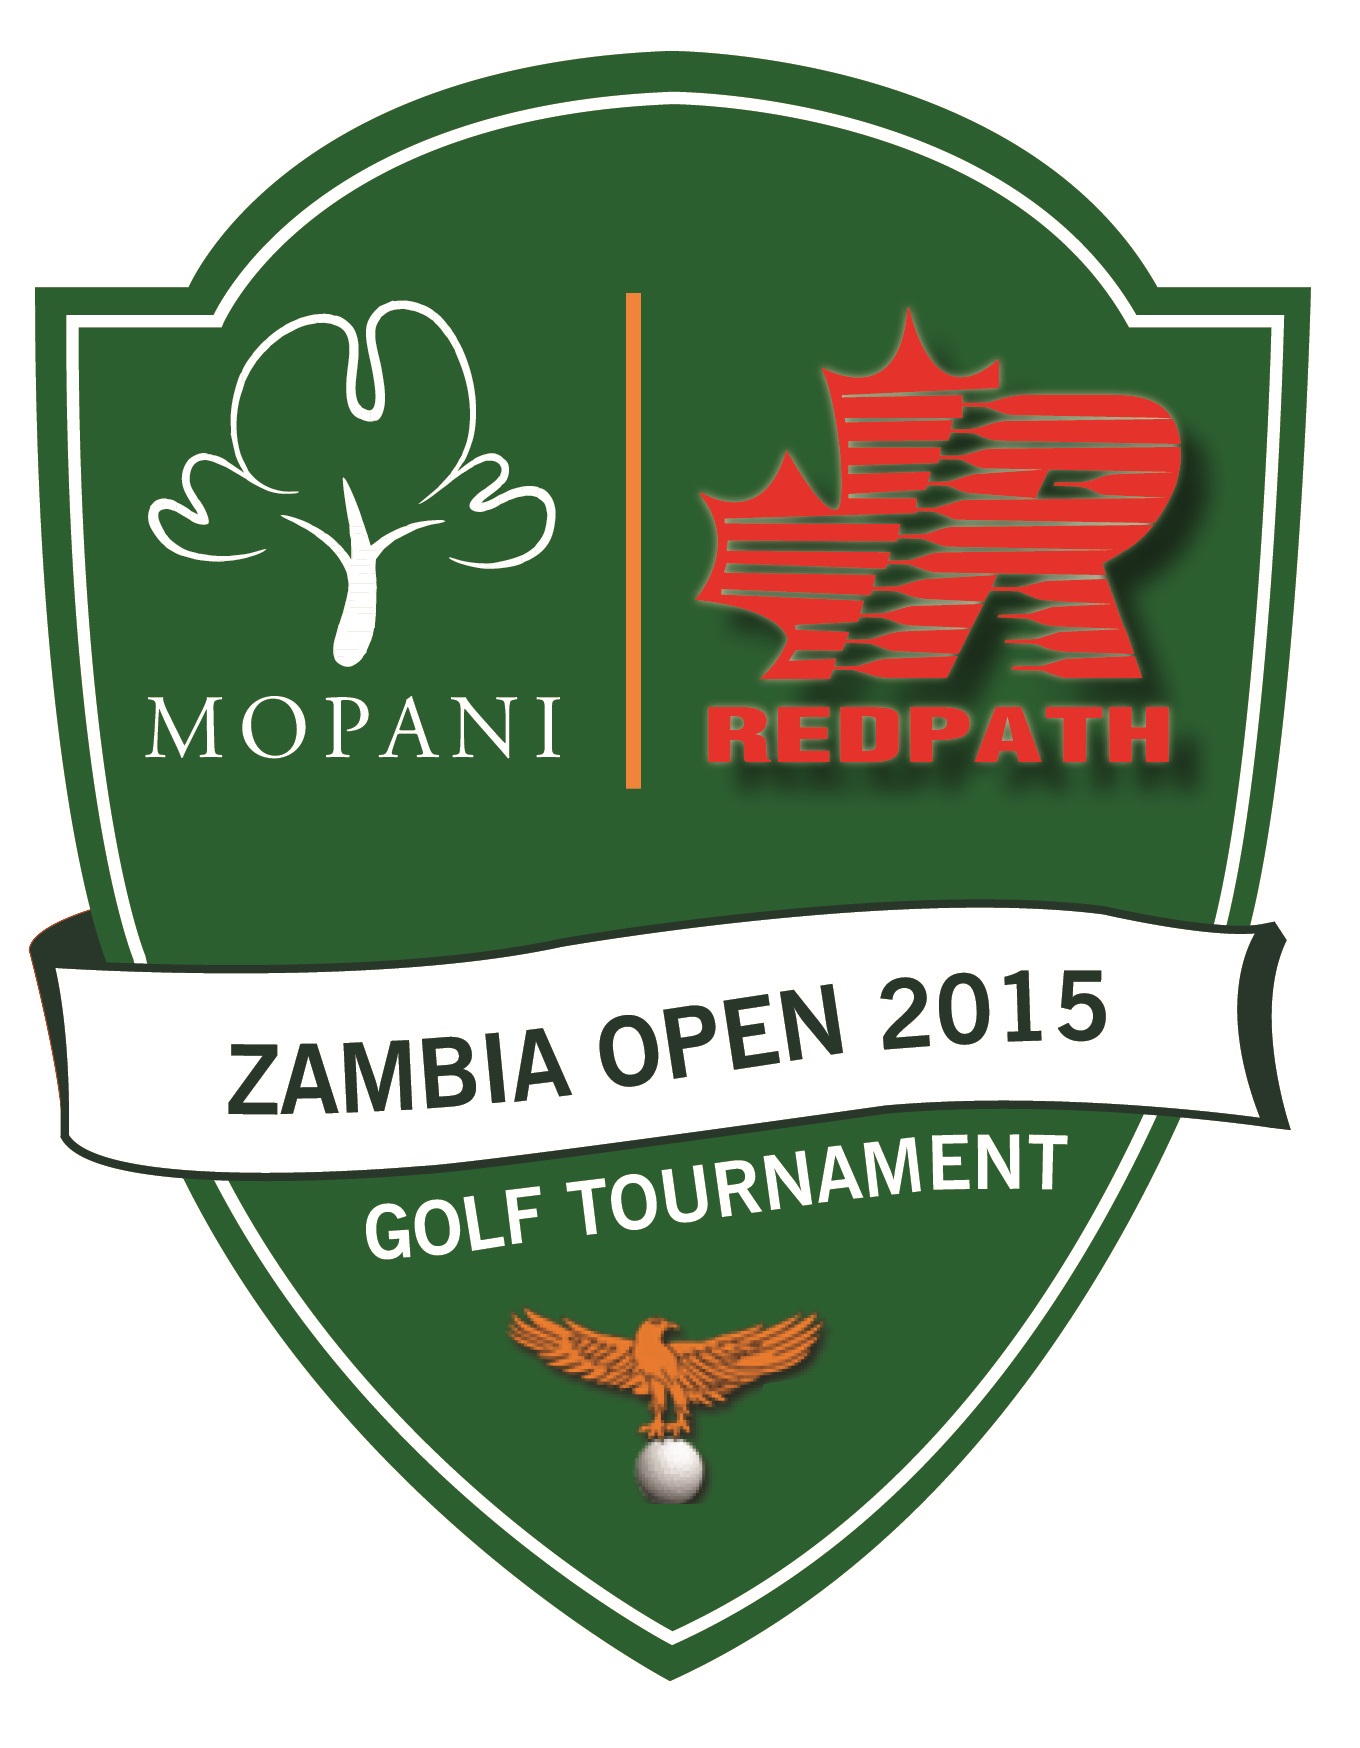 Mopani/Redpath Zambia Open 2015